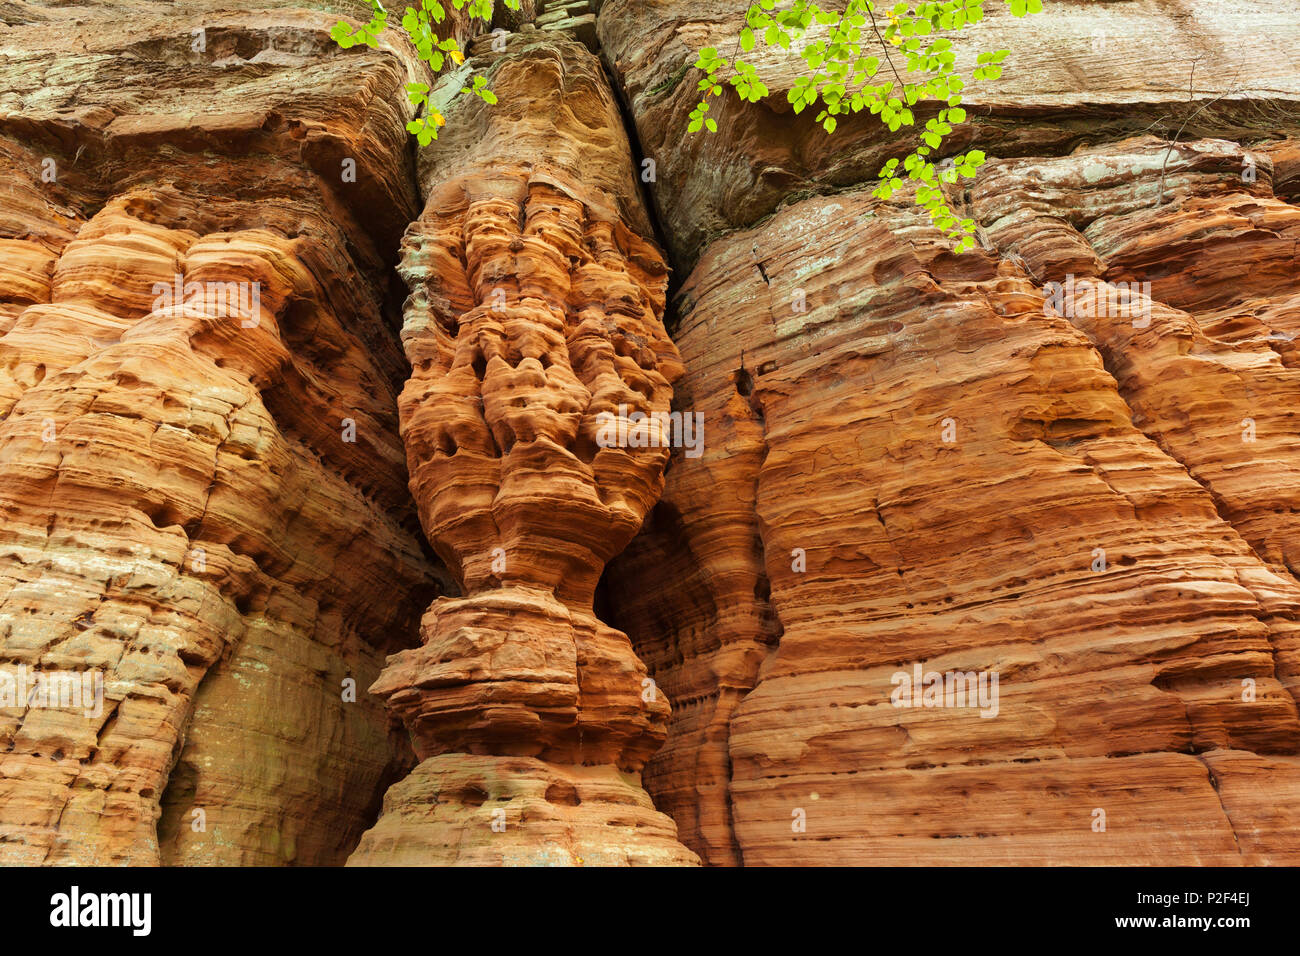 Formazione di roccia Altschlossfelsen, vicino Eppenbrunn, Foresta del Palatinato natura park, Renania-Palatinato, Germania Foto Stock